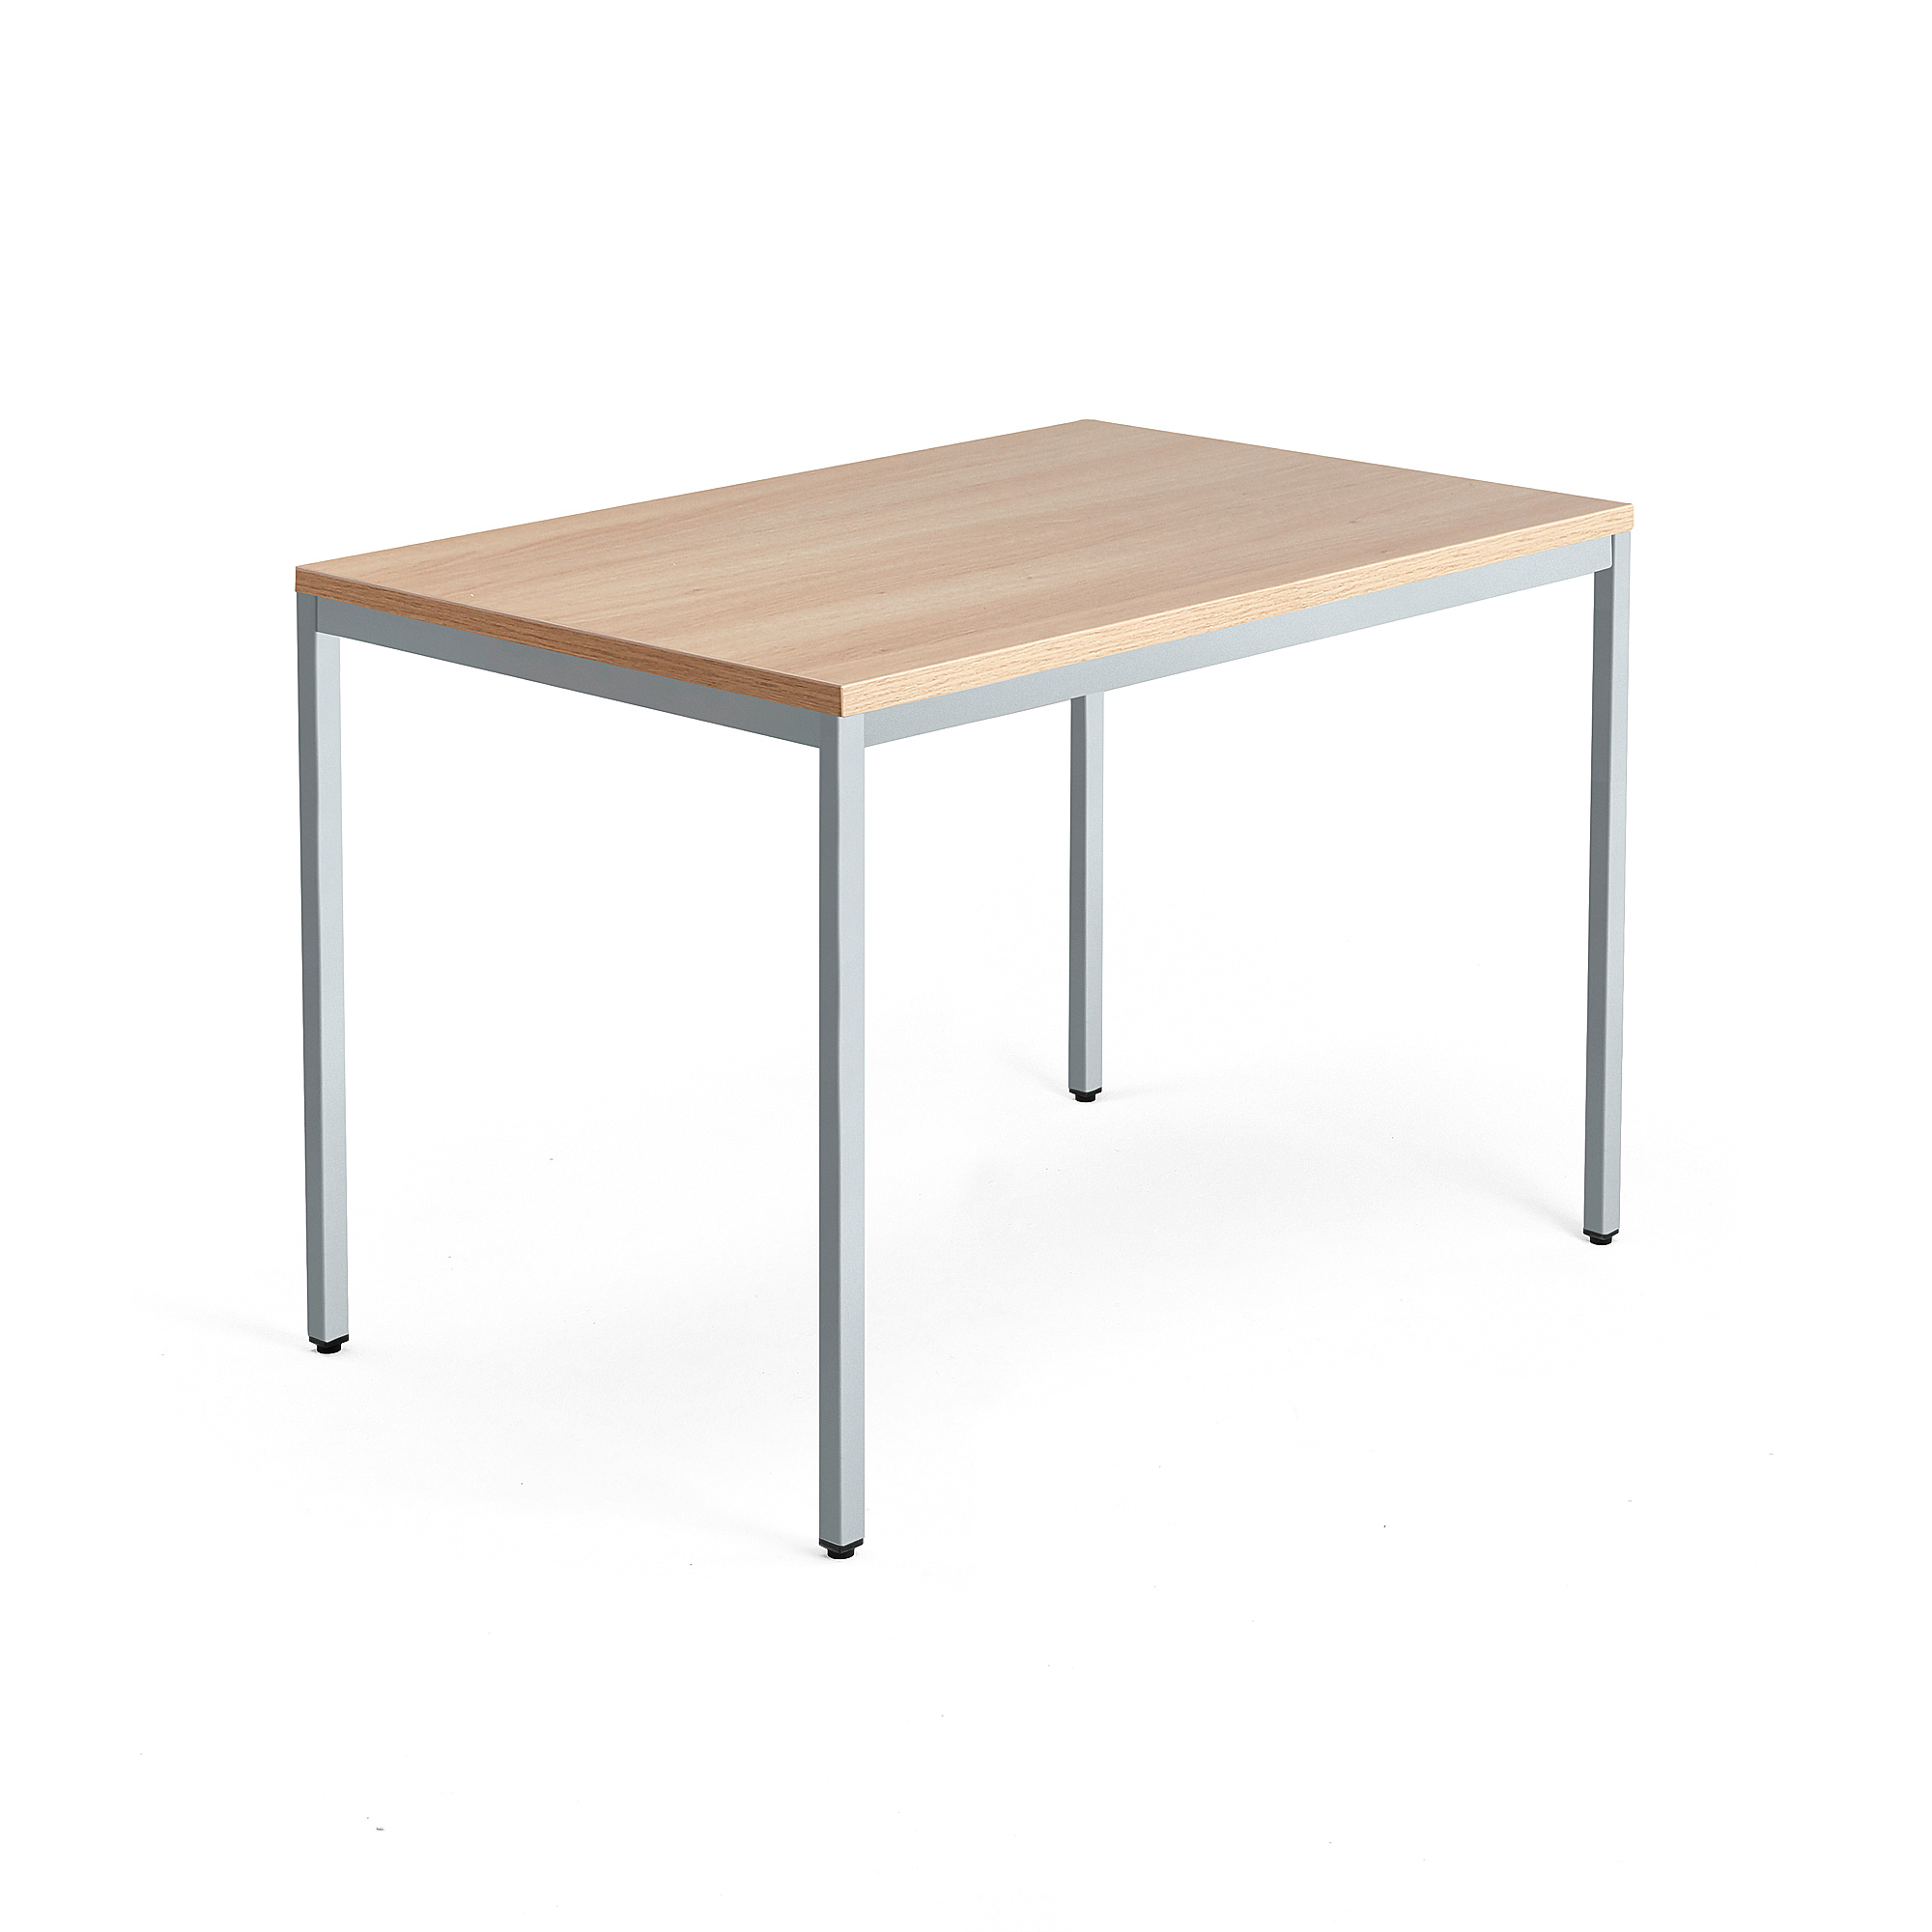 Psací stůl QBUS, 4 nohy, 1200x800 mm, stříbrný rám, dub